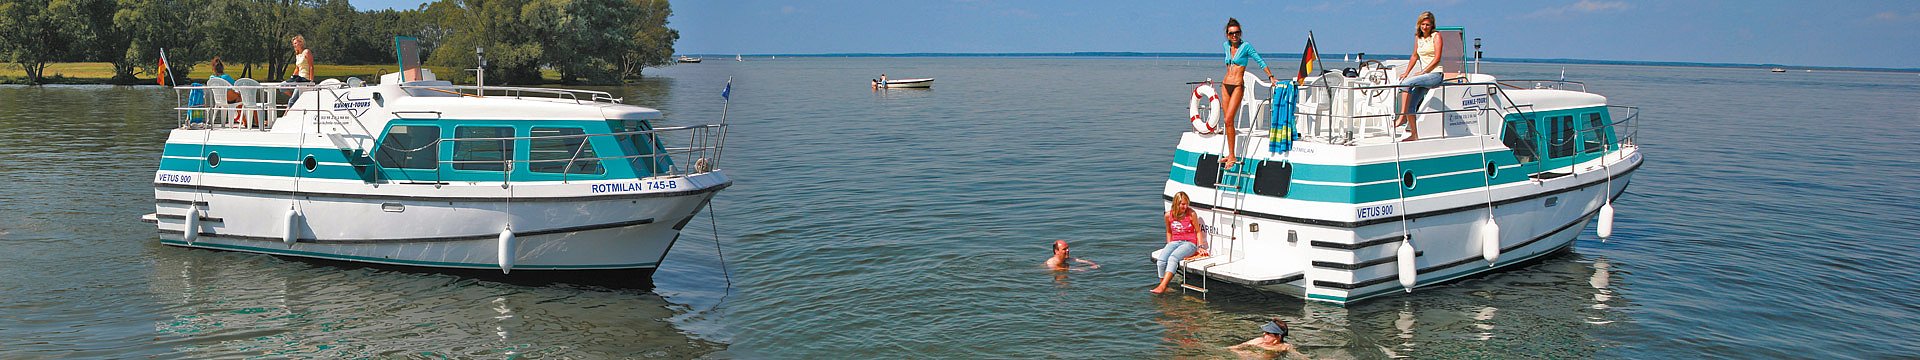 Zwei Vetusboote ankern auf einem See. Einige Menschen baden, andere sitzen oder stehen bequem an Bord.